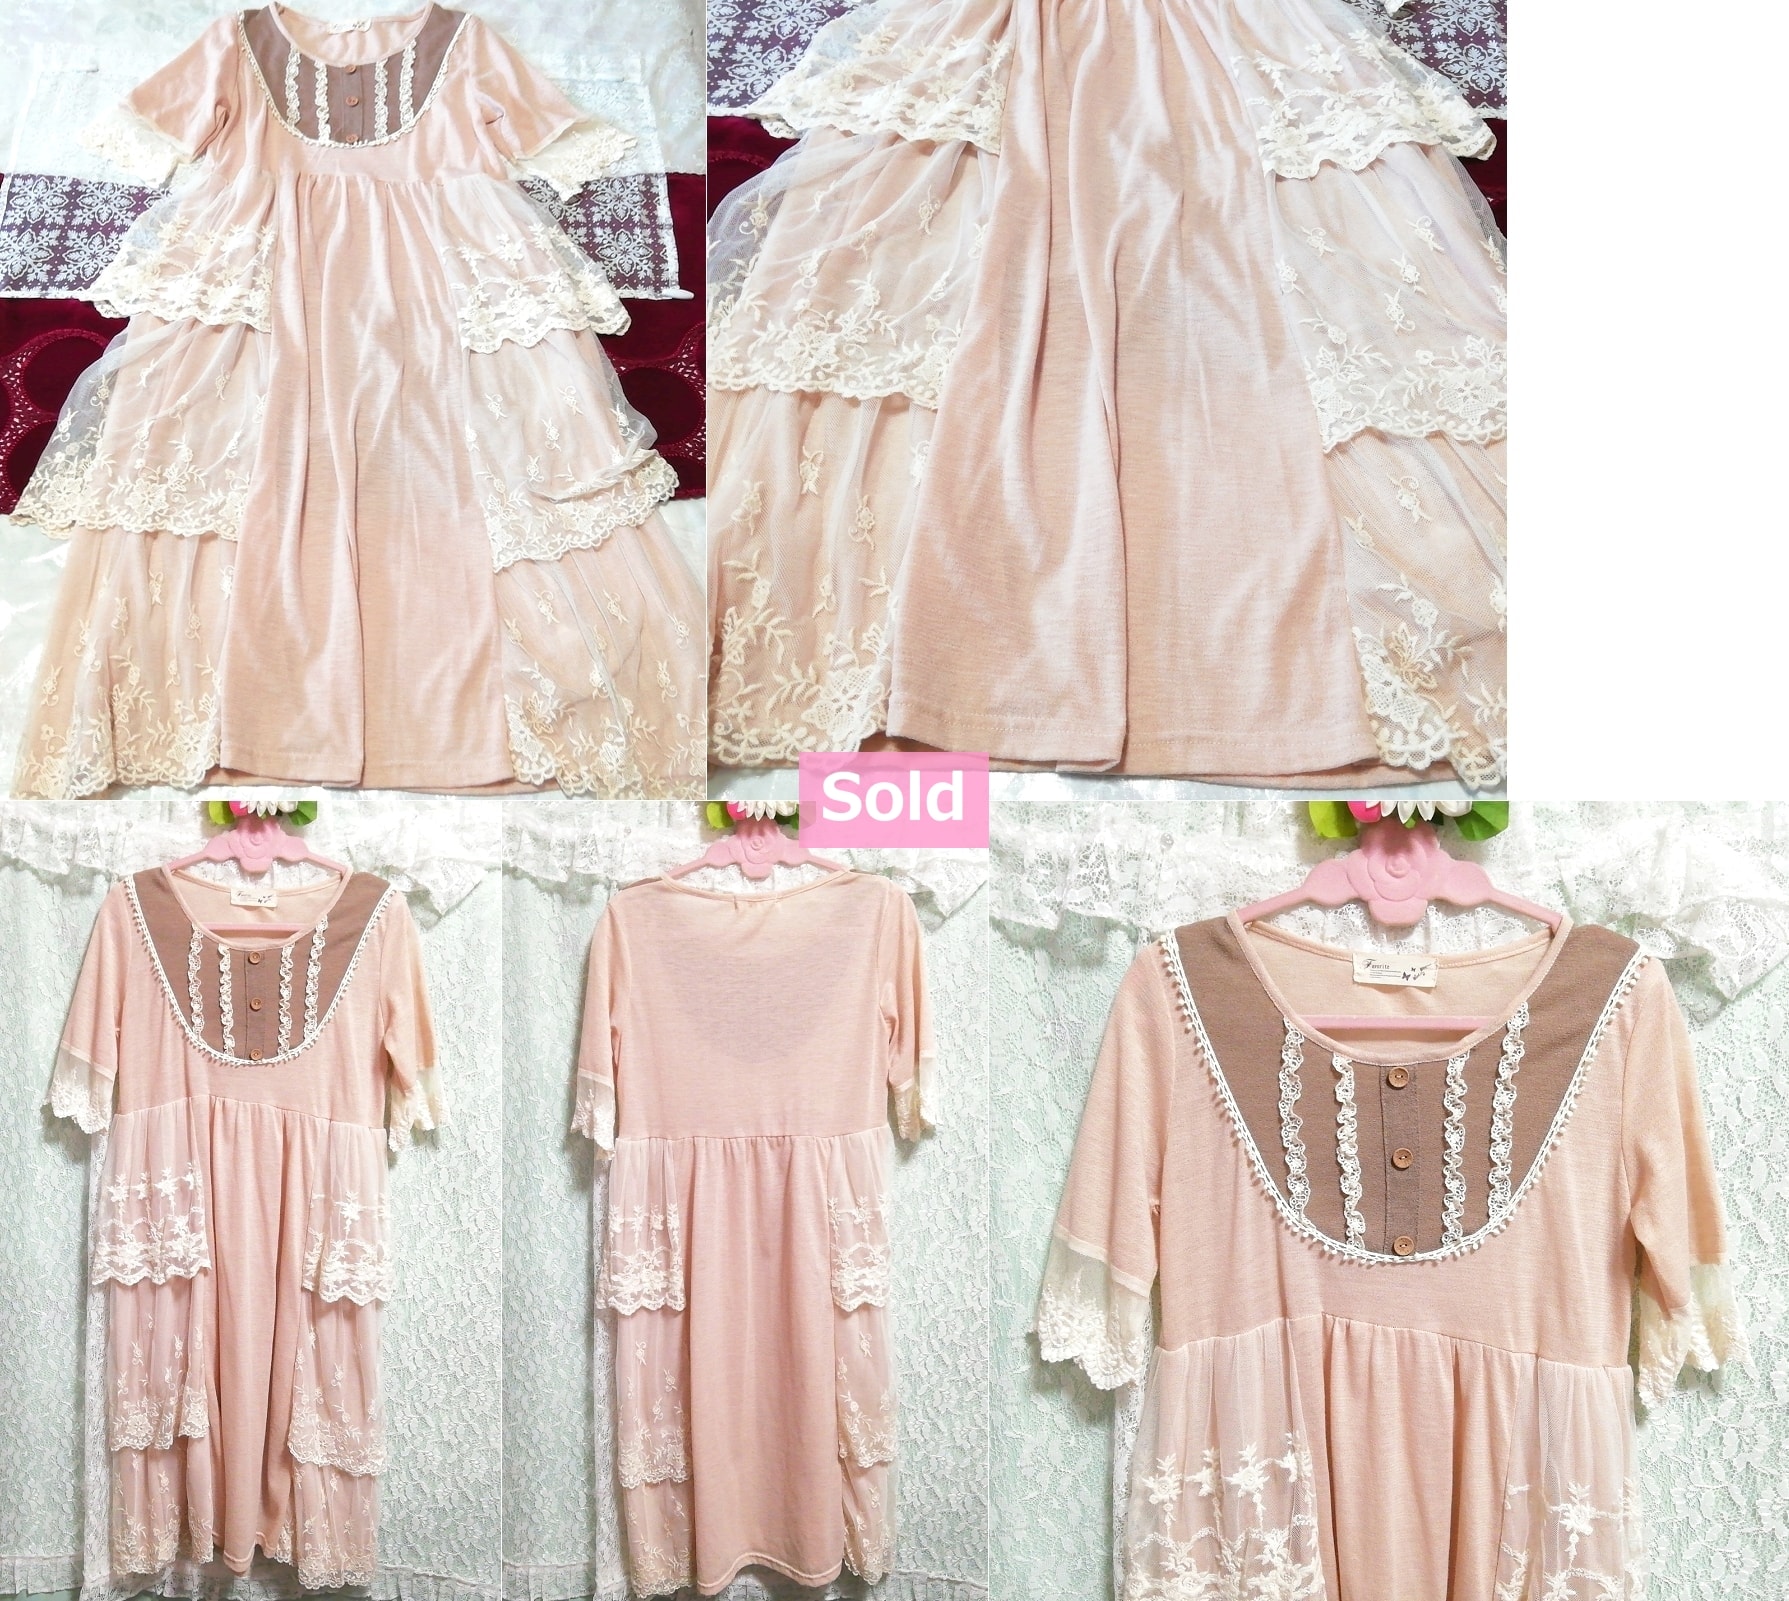 핑크 공주 레이스 반팔 긴 맥시 튜닉 잠옷 드레스, 튜닉, 짧은 소매, 중간 사이즈